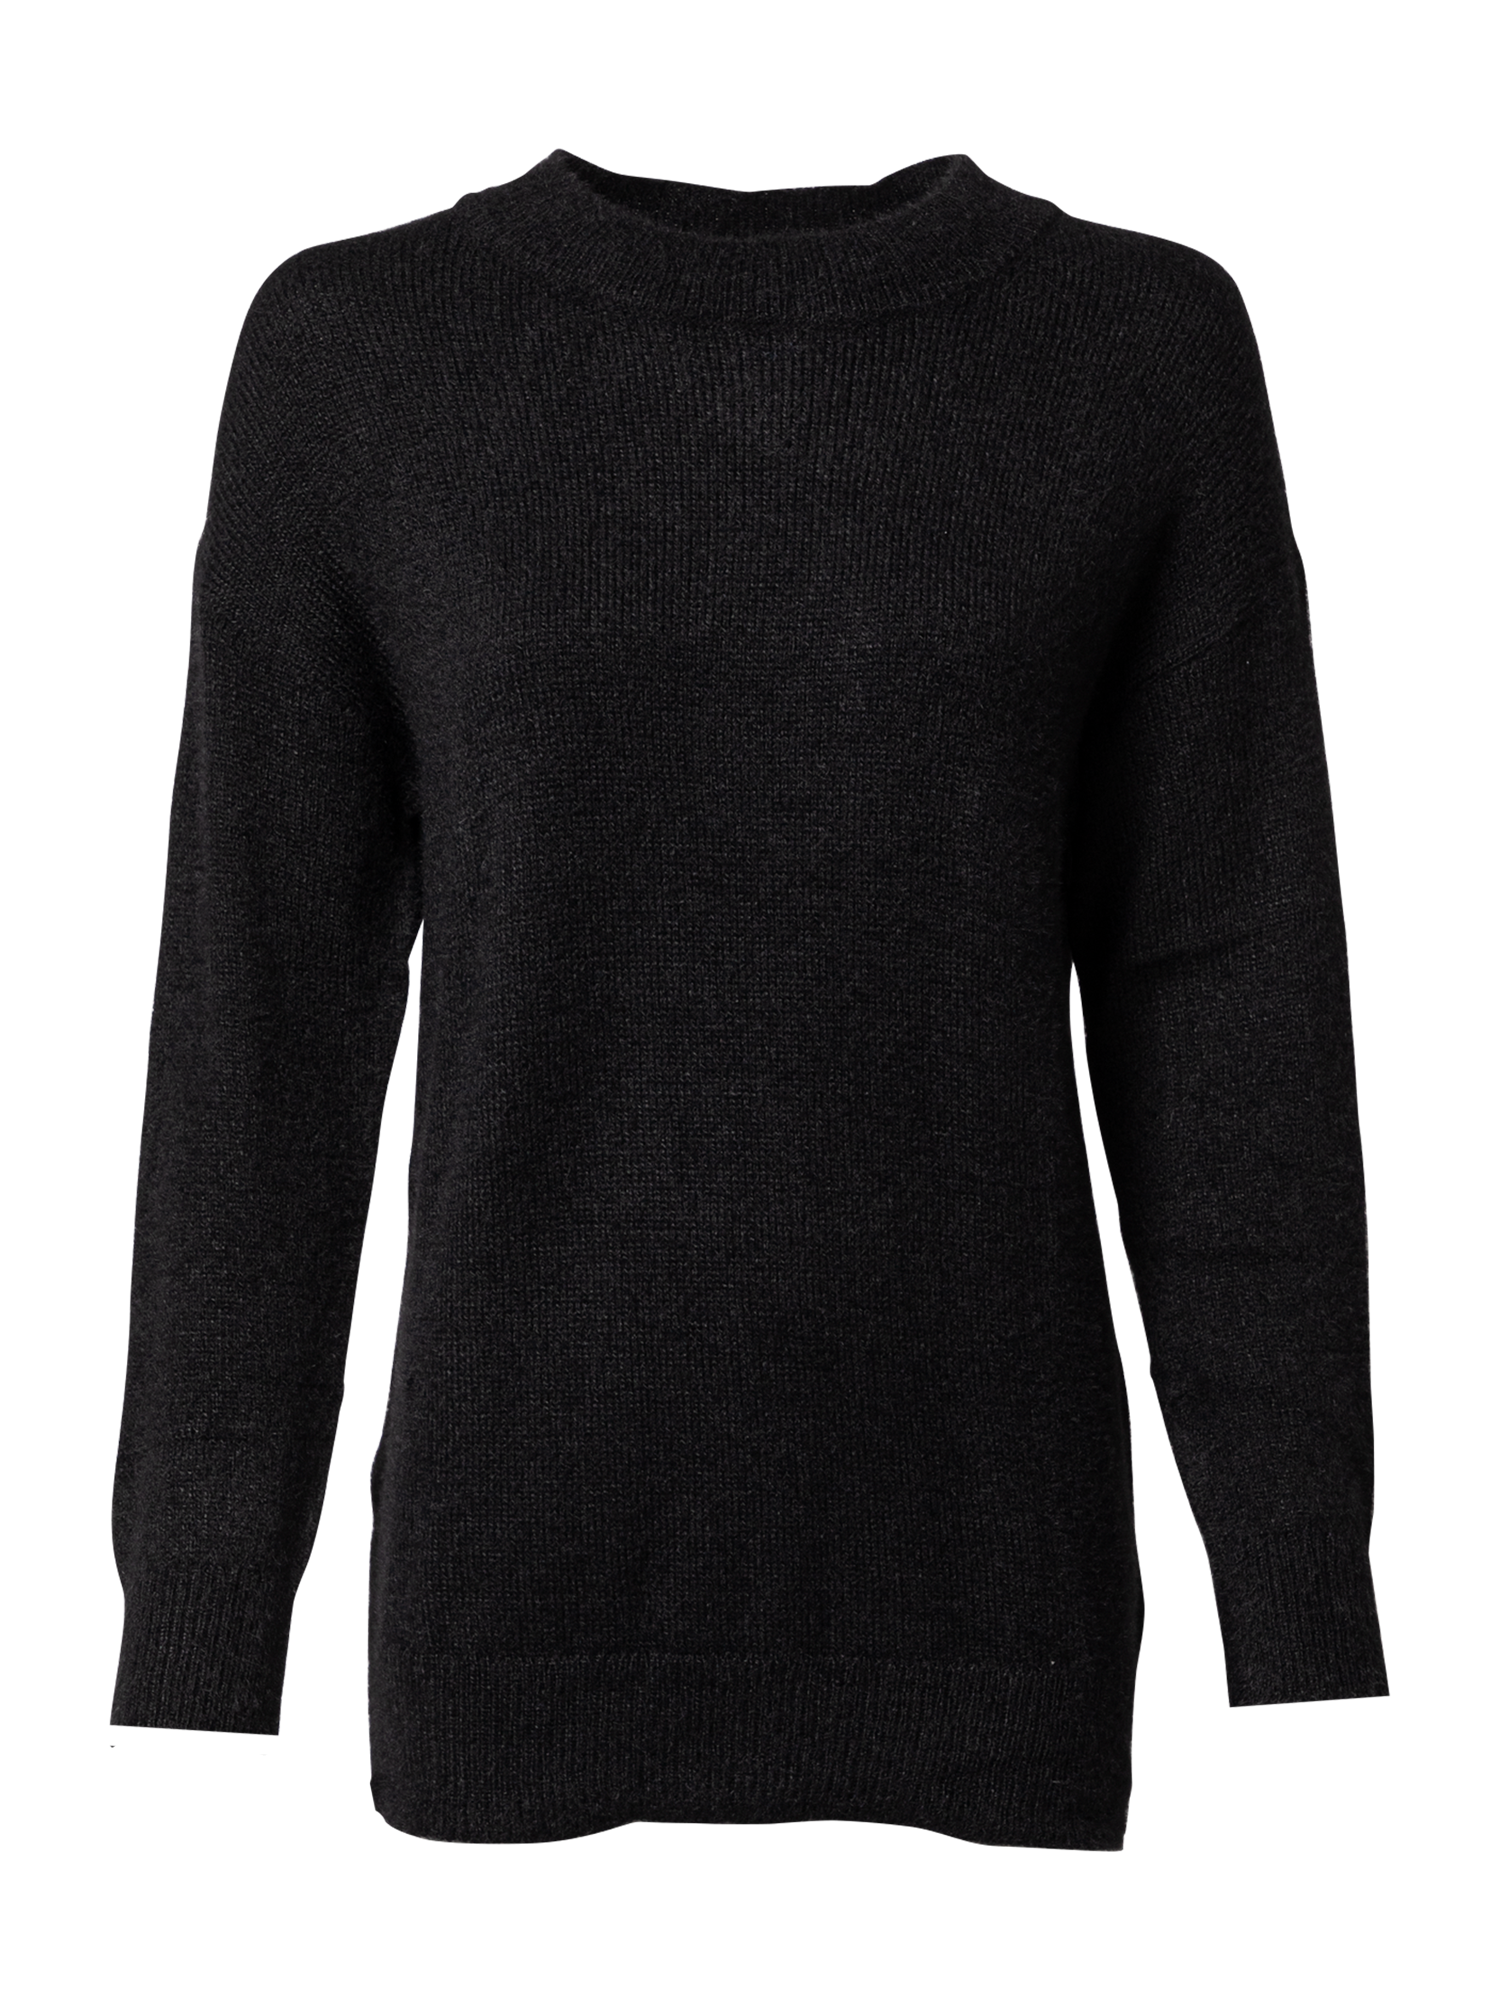 Odzież Swetry & dzianina JDY Sweter Alessi w kolorze Czarnym 